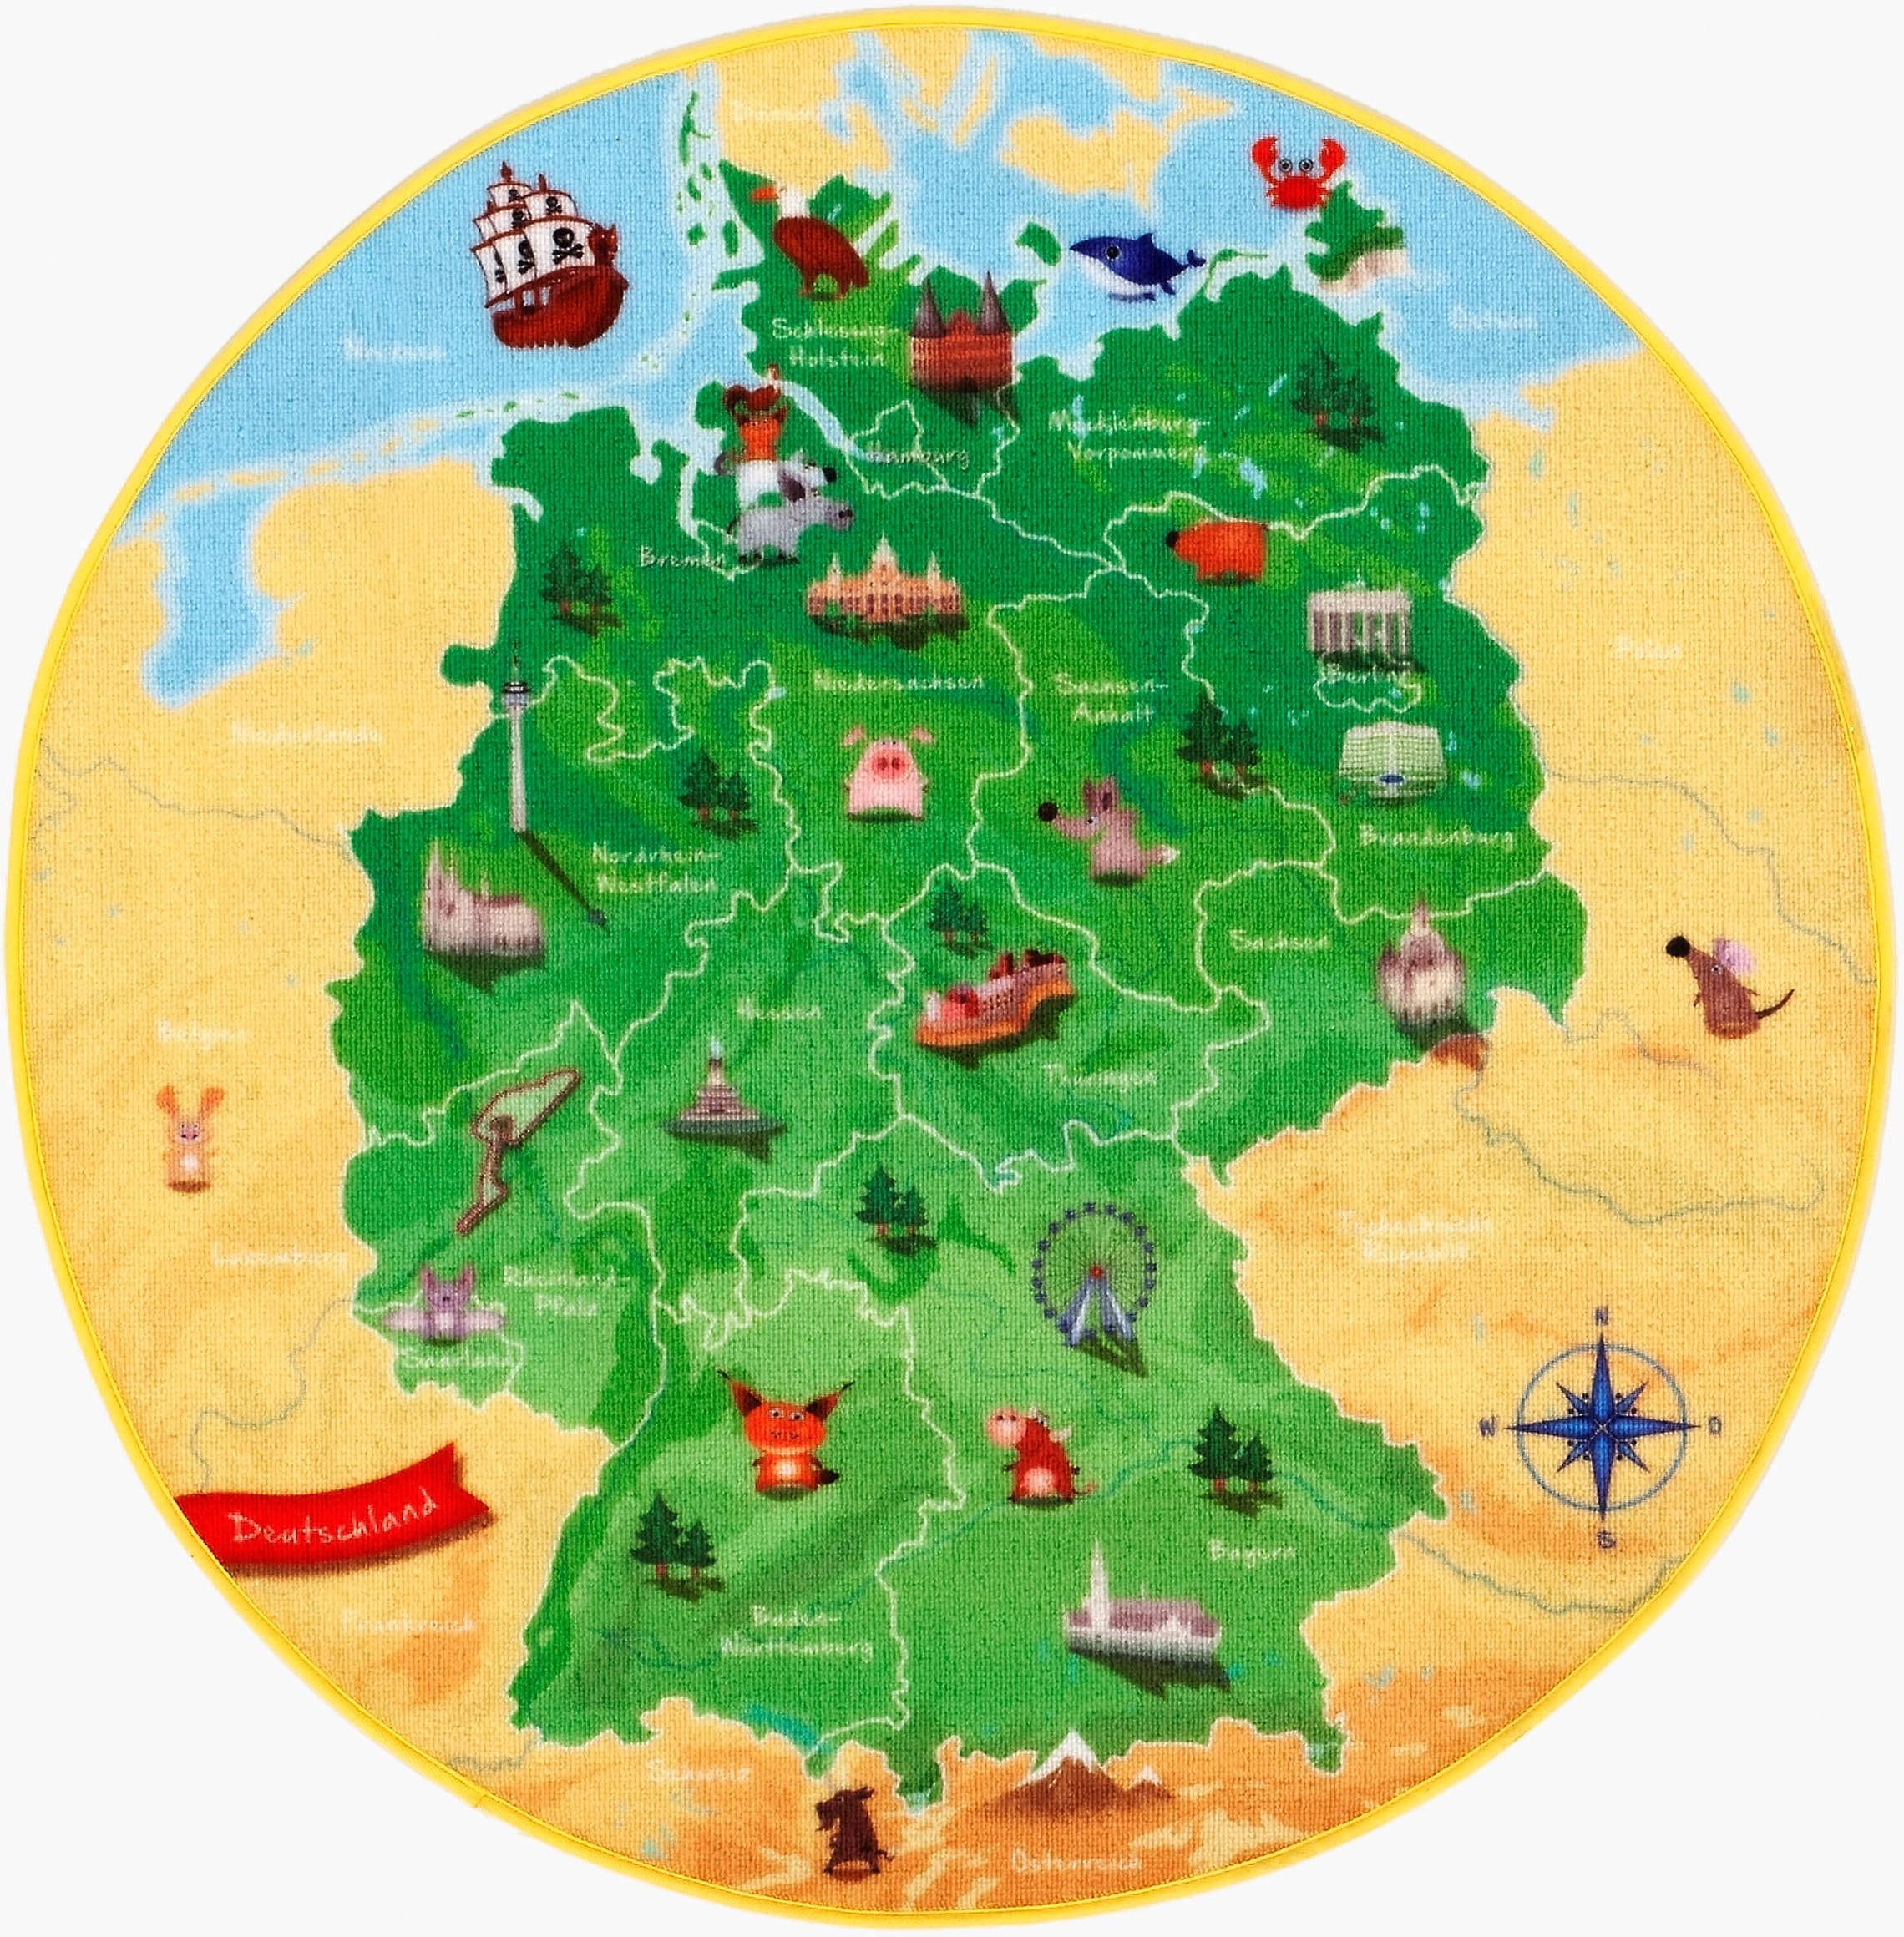 Böing Carpet Kinderteppich "DeutschlandKarte DE-1", rund, Spielteppich, Motiv Deutschlandkarte, Kinderzimmer